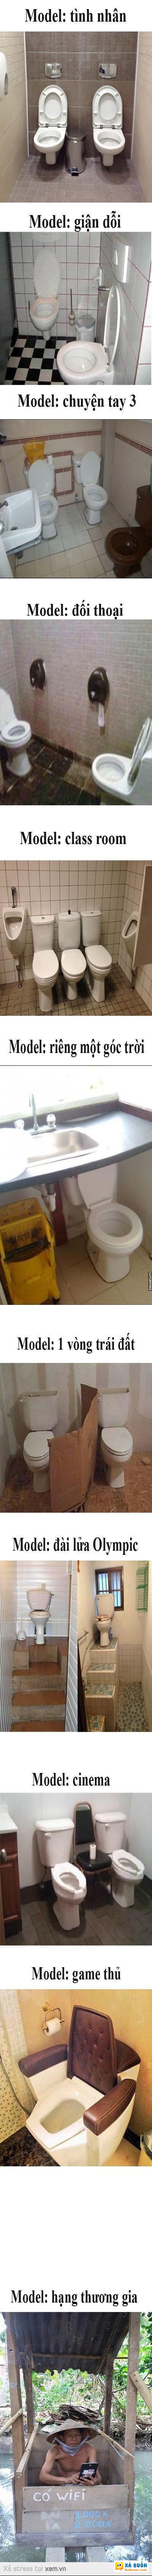  :d  Full model WC :D  :)  -  haivl | hài hước | hài vl  